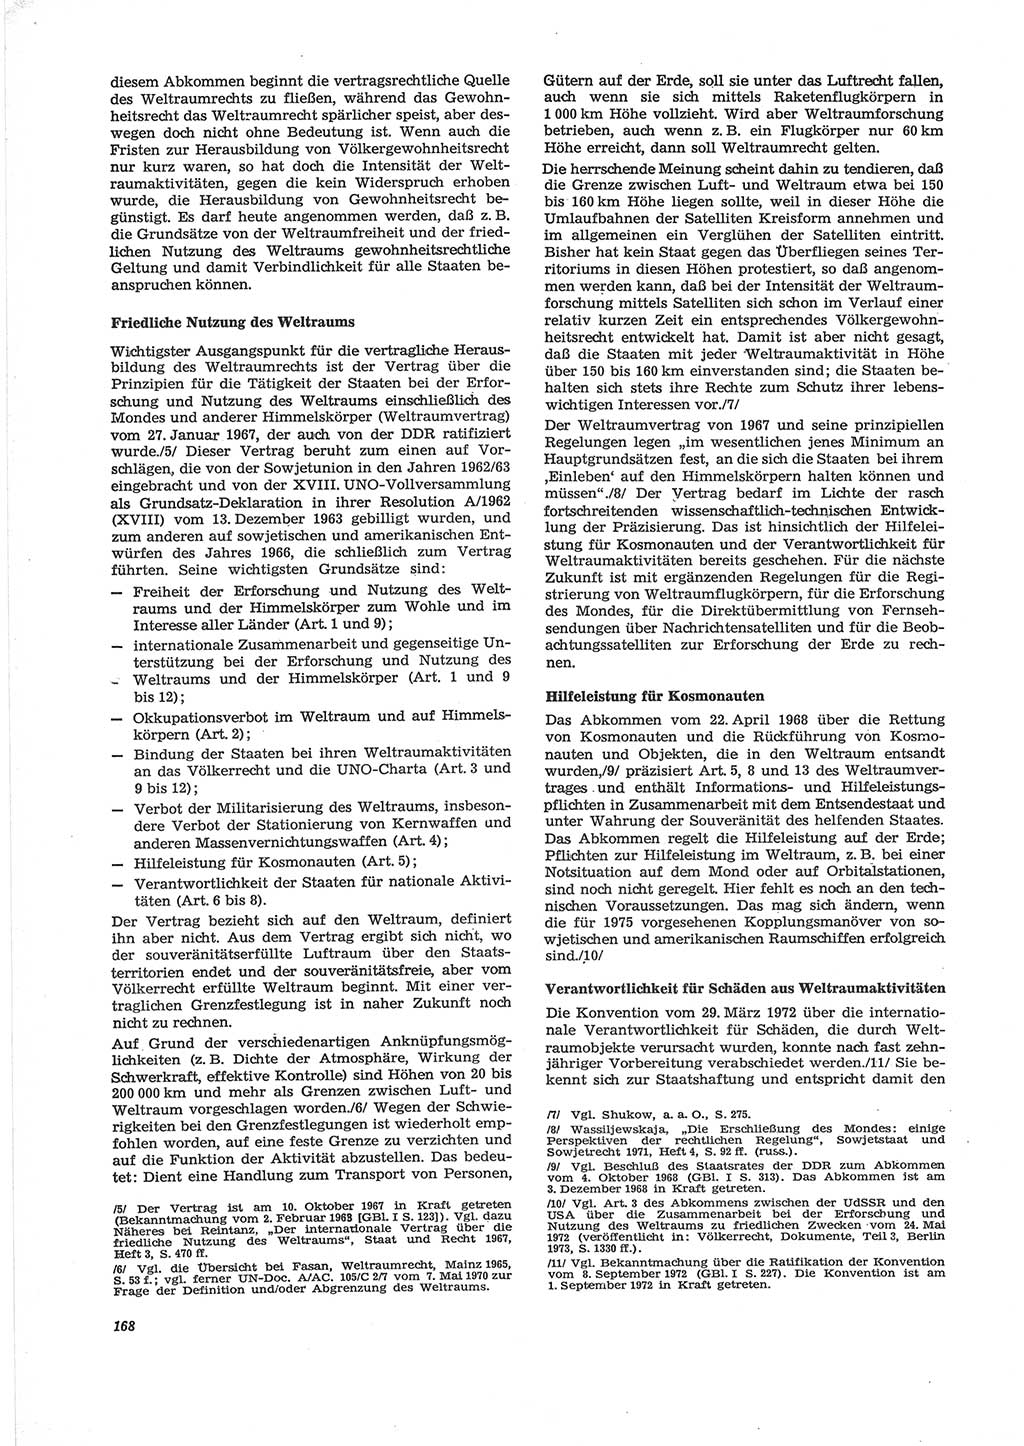 Neue Justiz (NJ), Zeitschrift für Recht und Rechtswissenschaft [Deutsche Demokratische Republik (DDR)], 28. Jahrgang 1974, Seite 168 (NJ DDR 1974, S. 168)